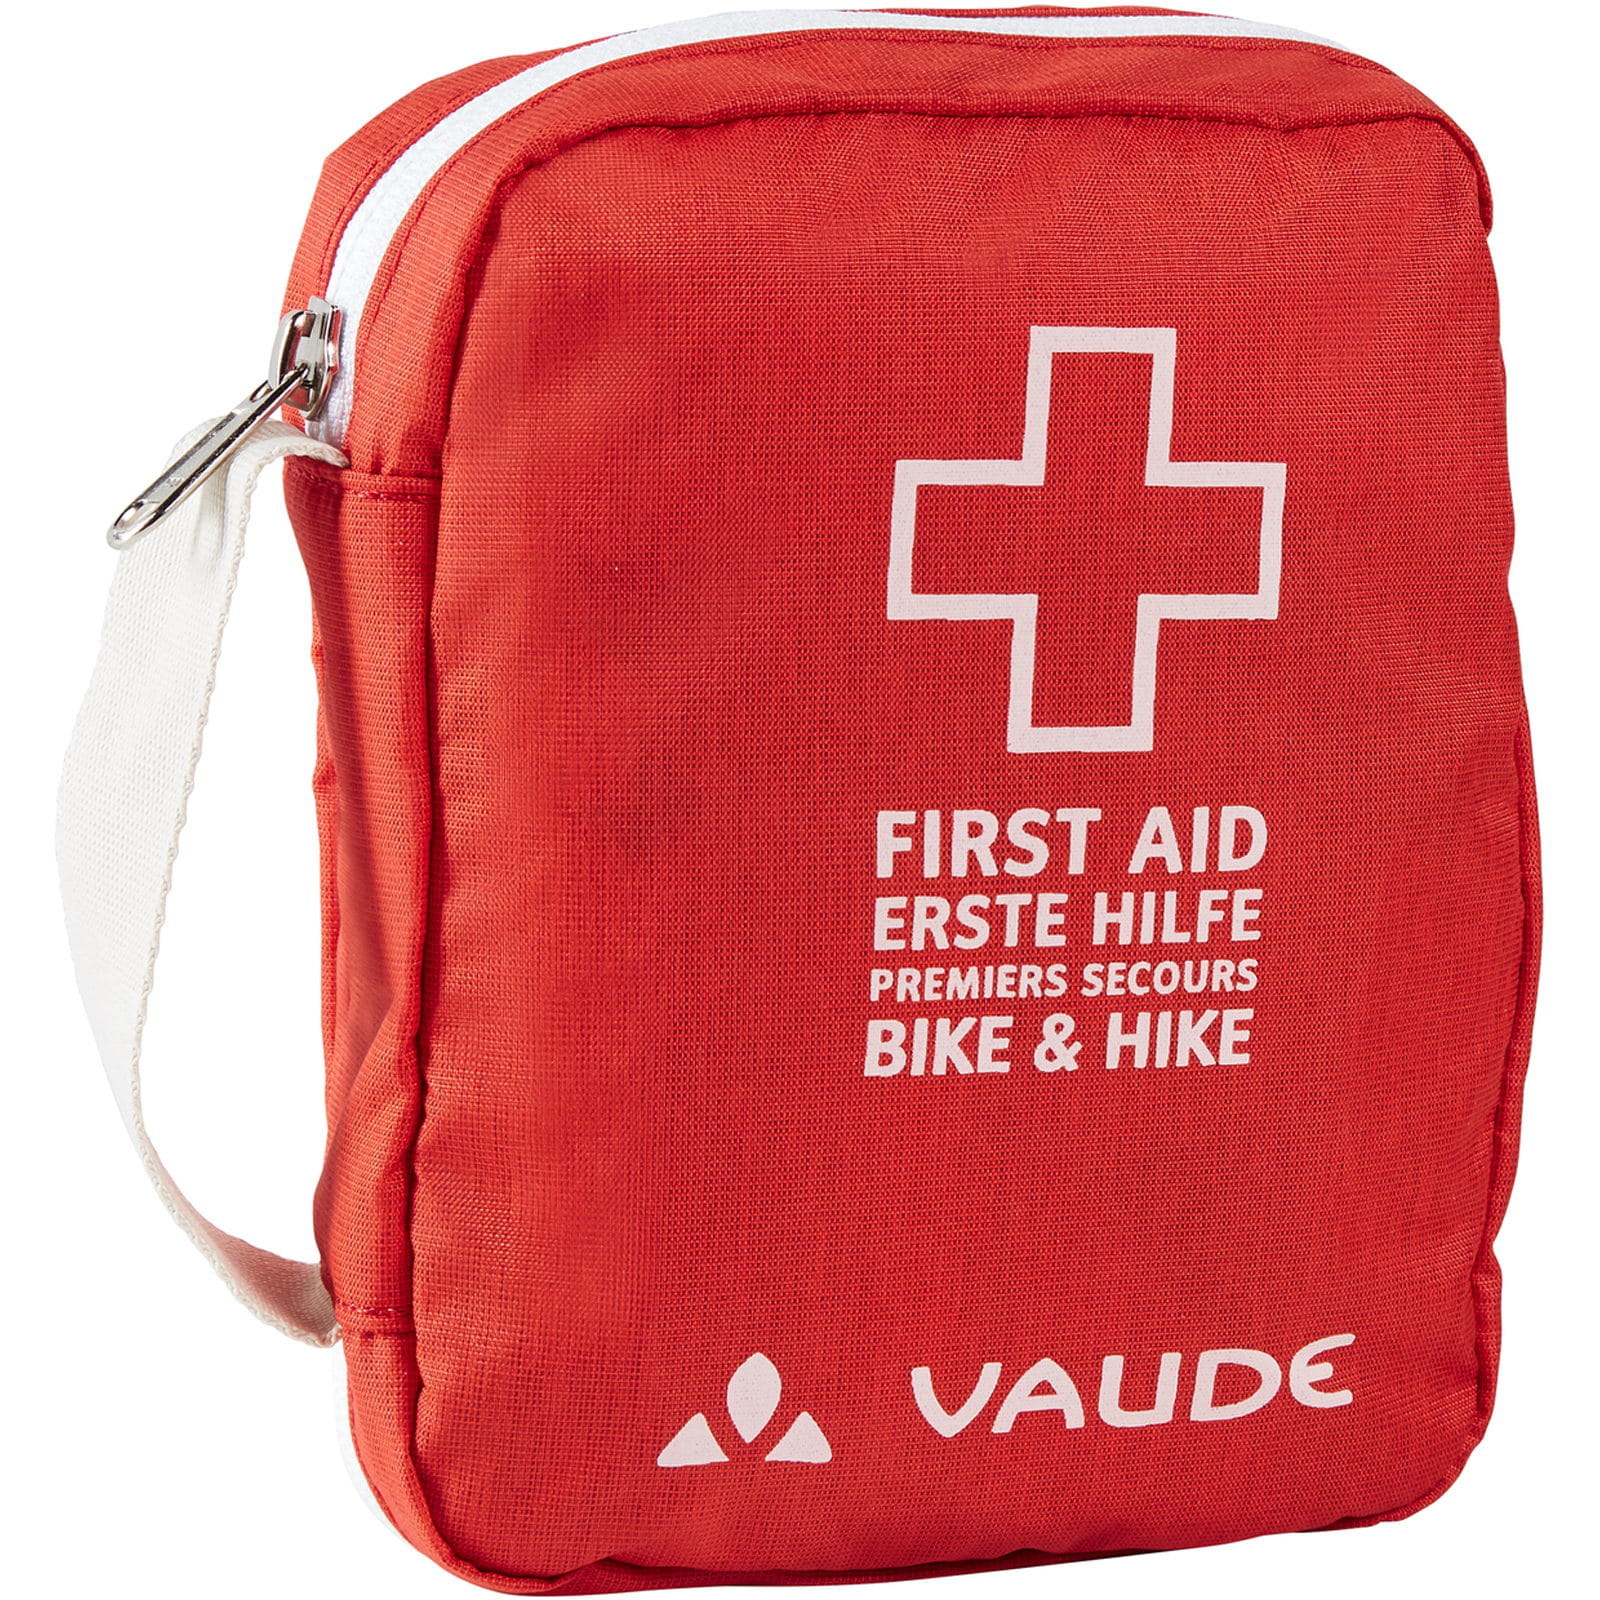 Erste-Hilfe-Tasche Compact